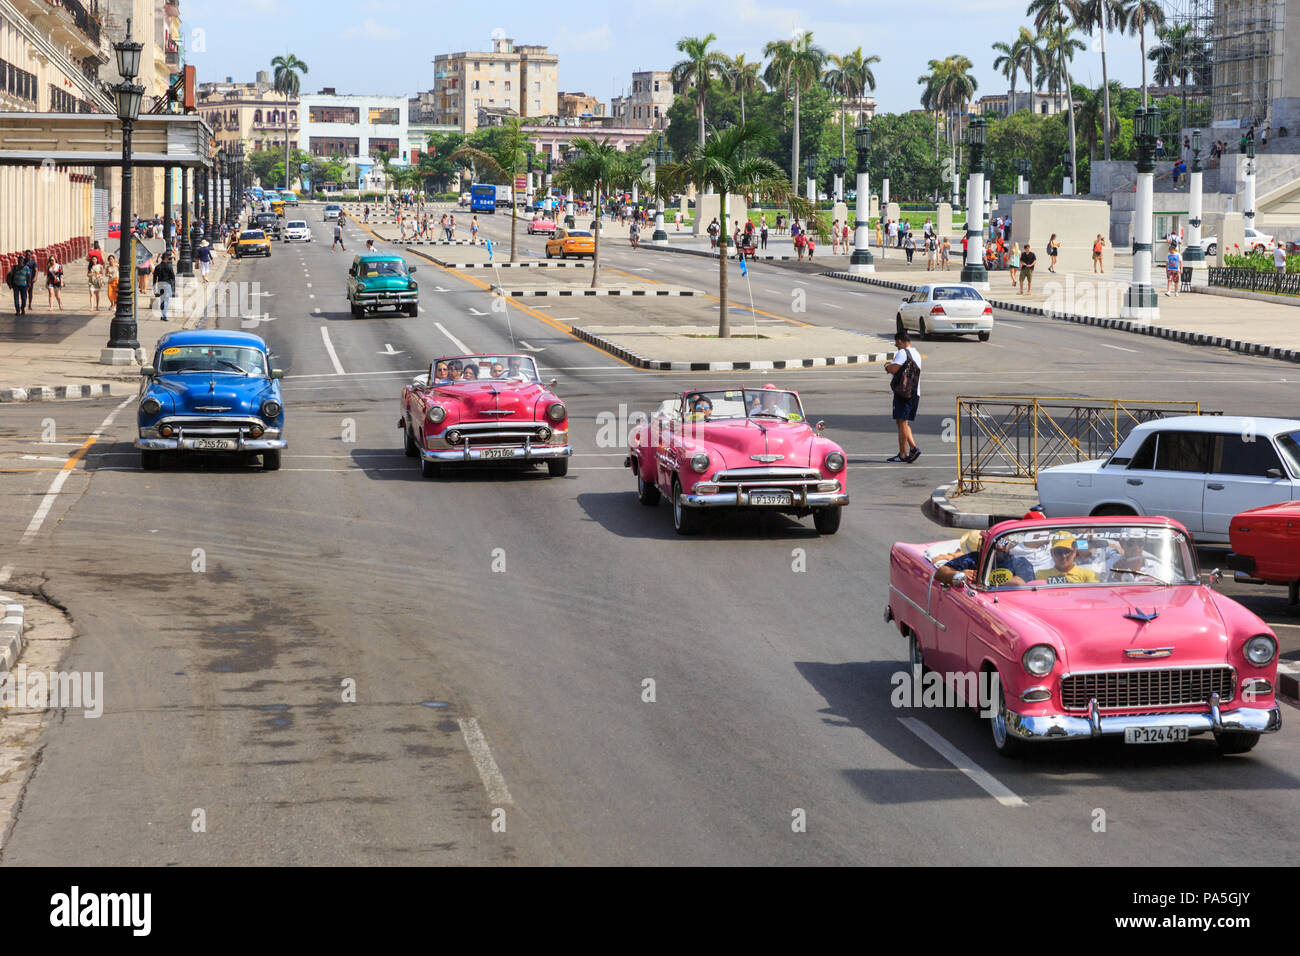 Auto classiche americane, taxi d'epoca che trasportano turisti e visitatori sul Paseo de Marti a l'Avana, Cuba Foto Stock